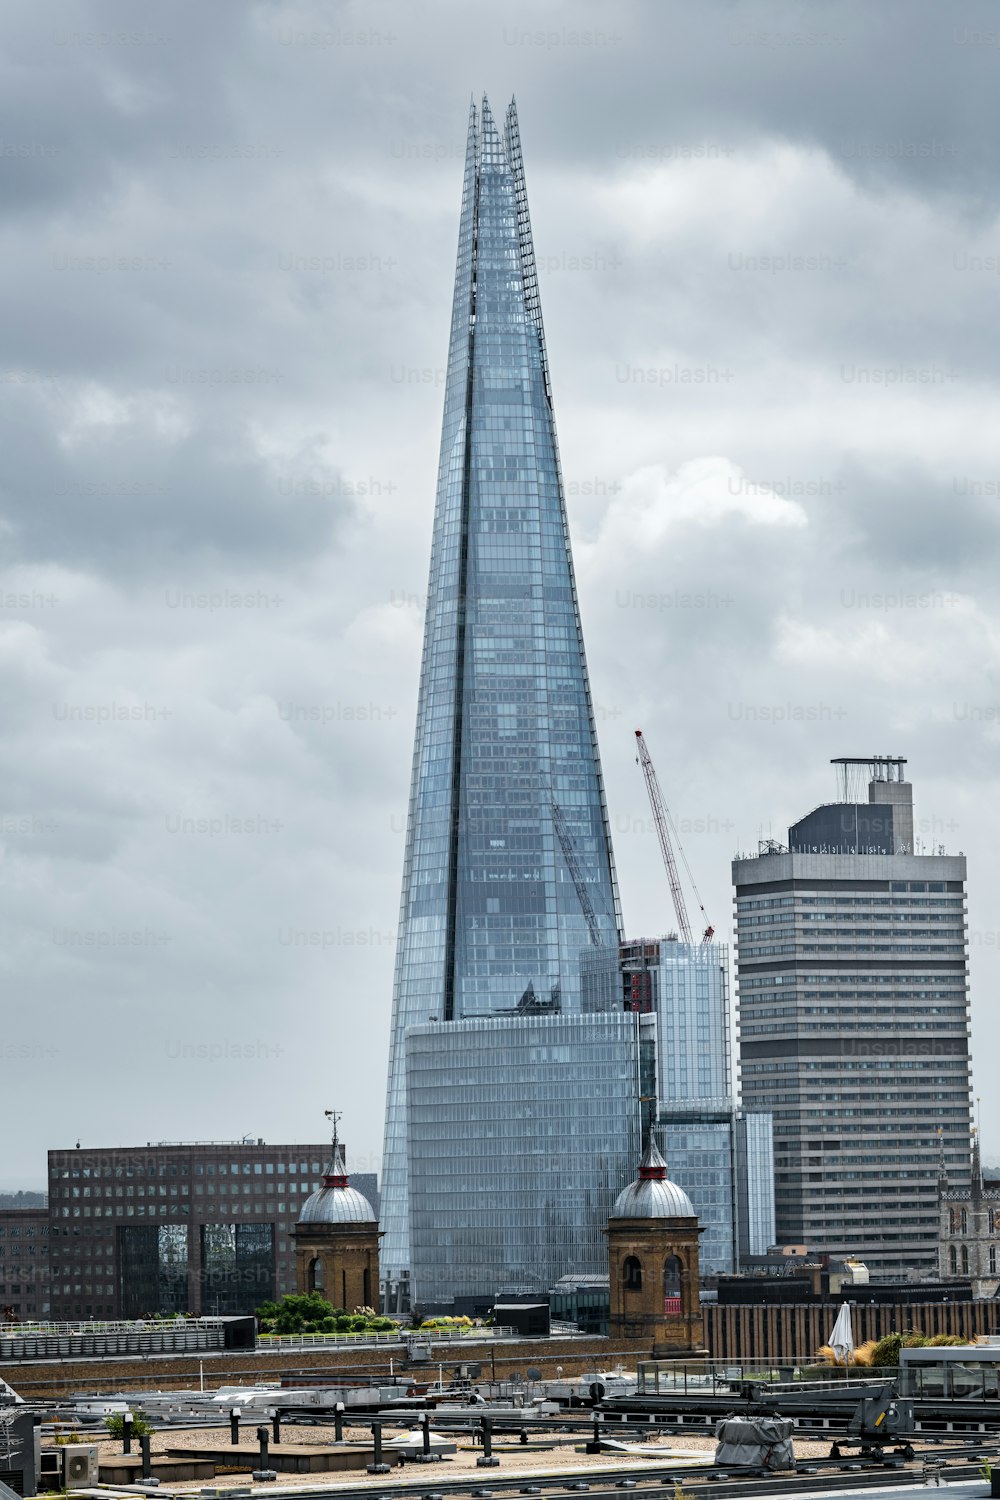 Paisaje urbano de Londres con el Shard al fondo, el rascacielos más alto de Europa Occidental.